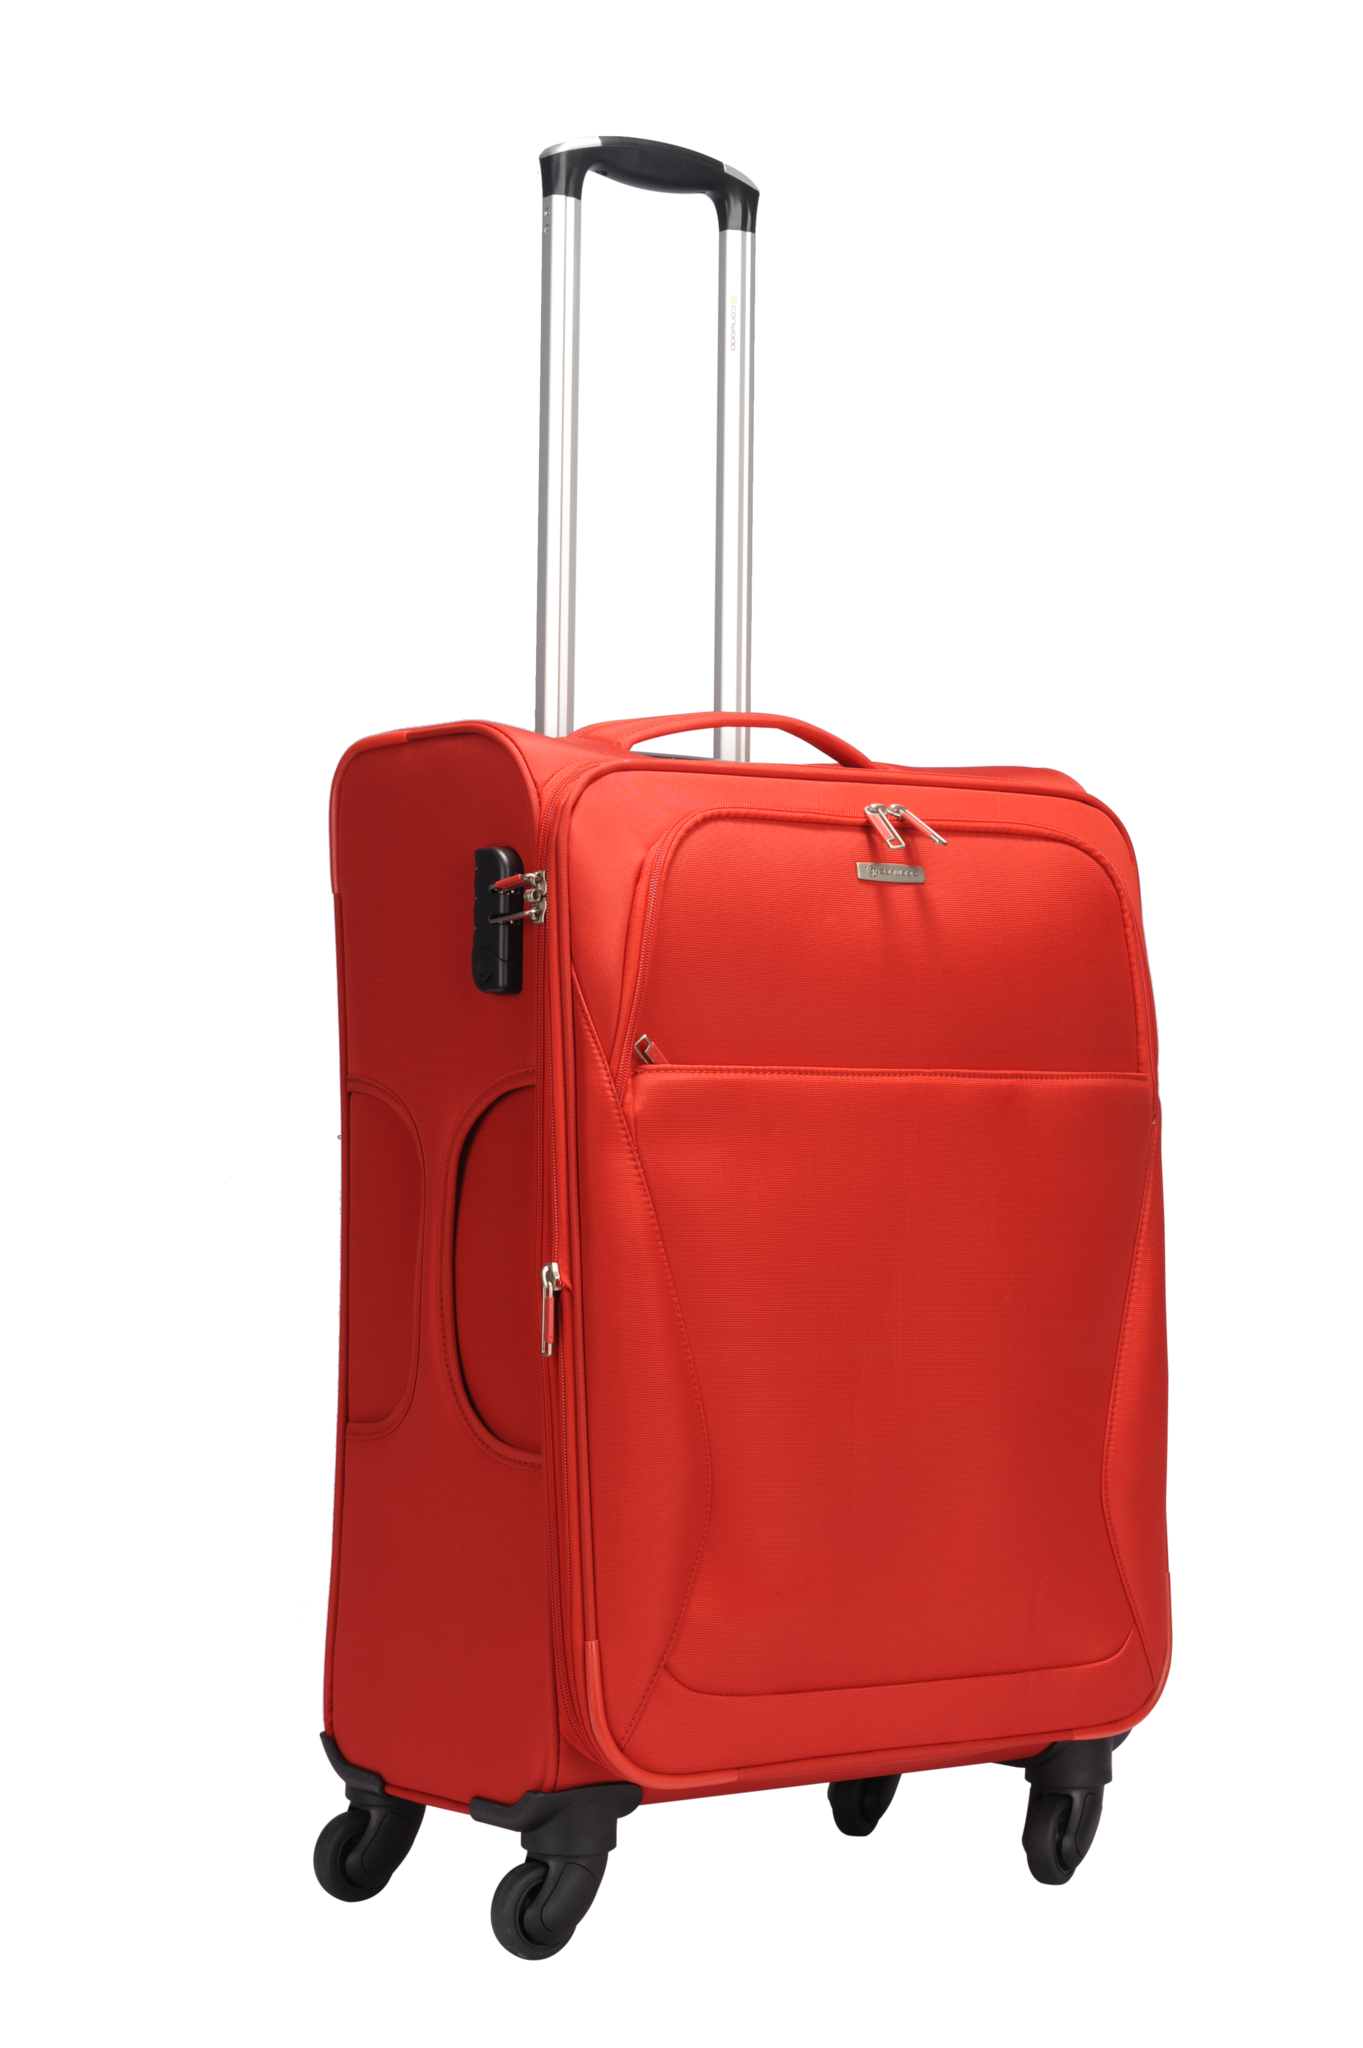 กระเป๋าเดินทางสีแดง